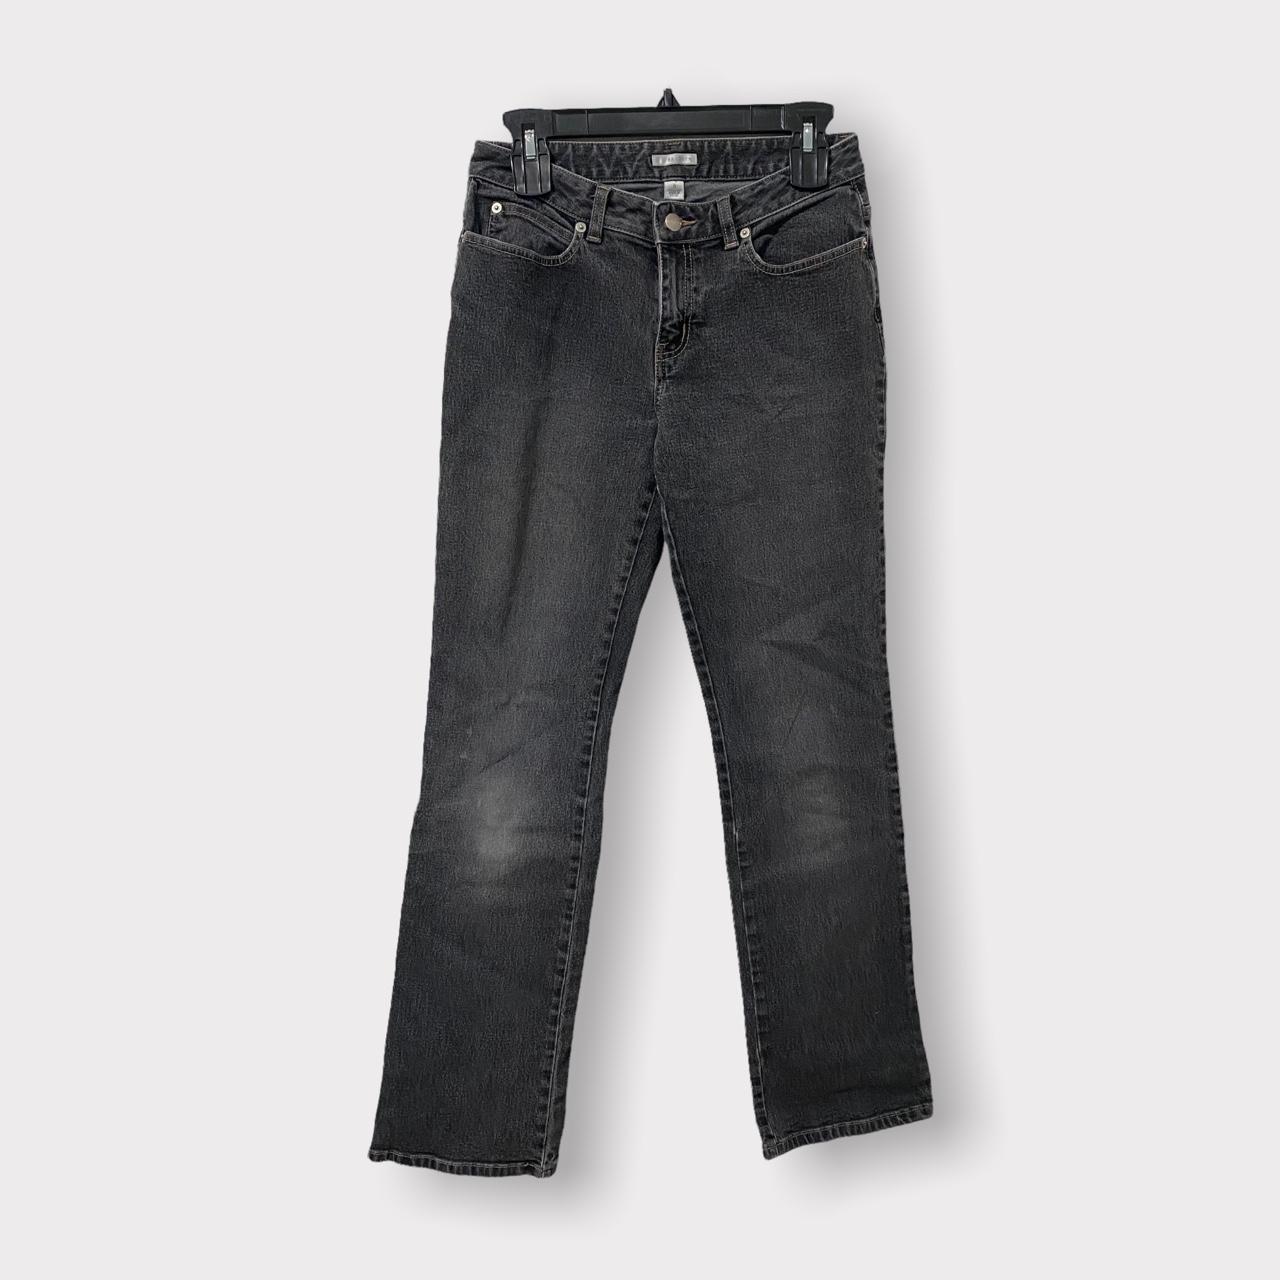 Product Image 1 - Halogen women jean pants size